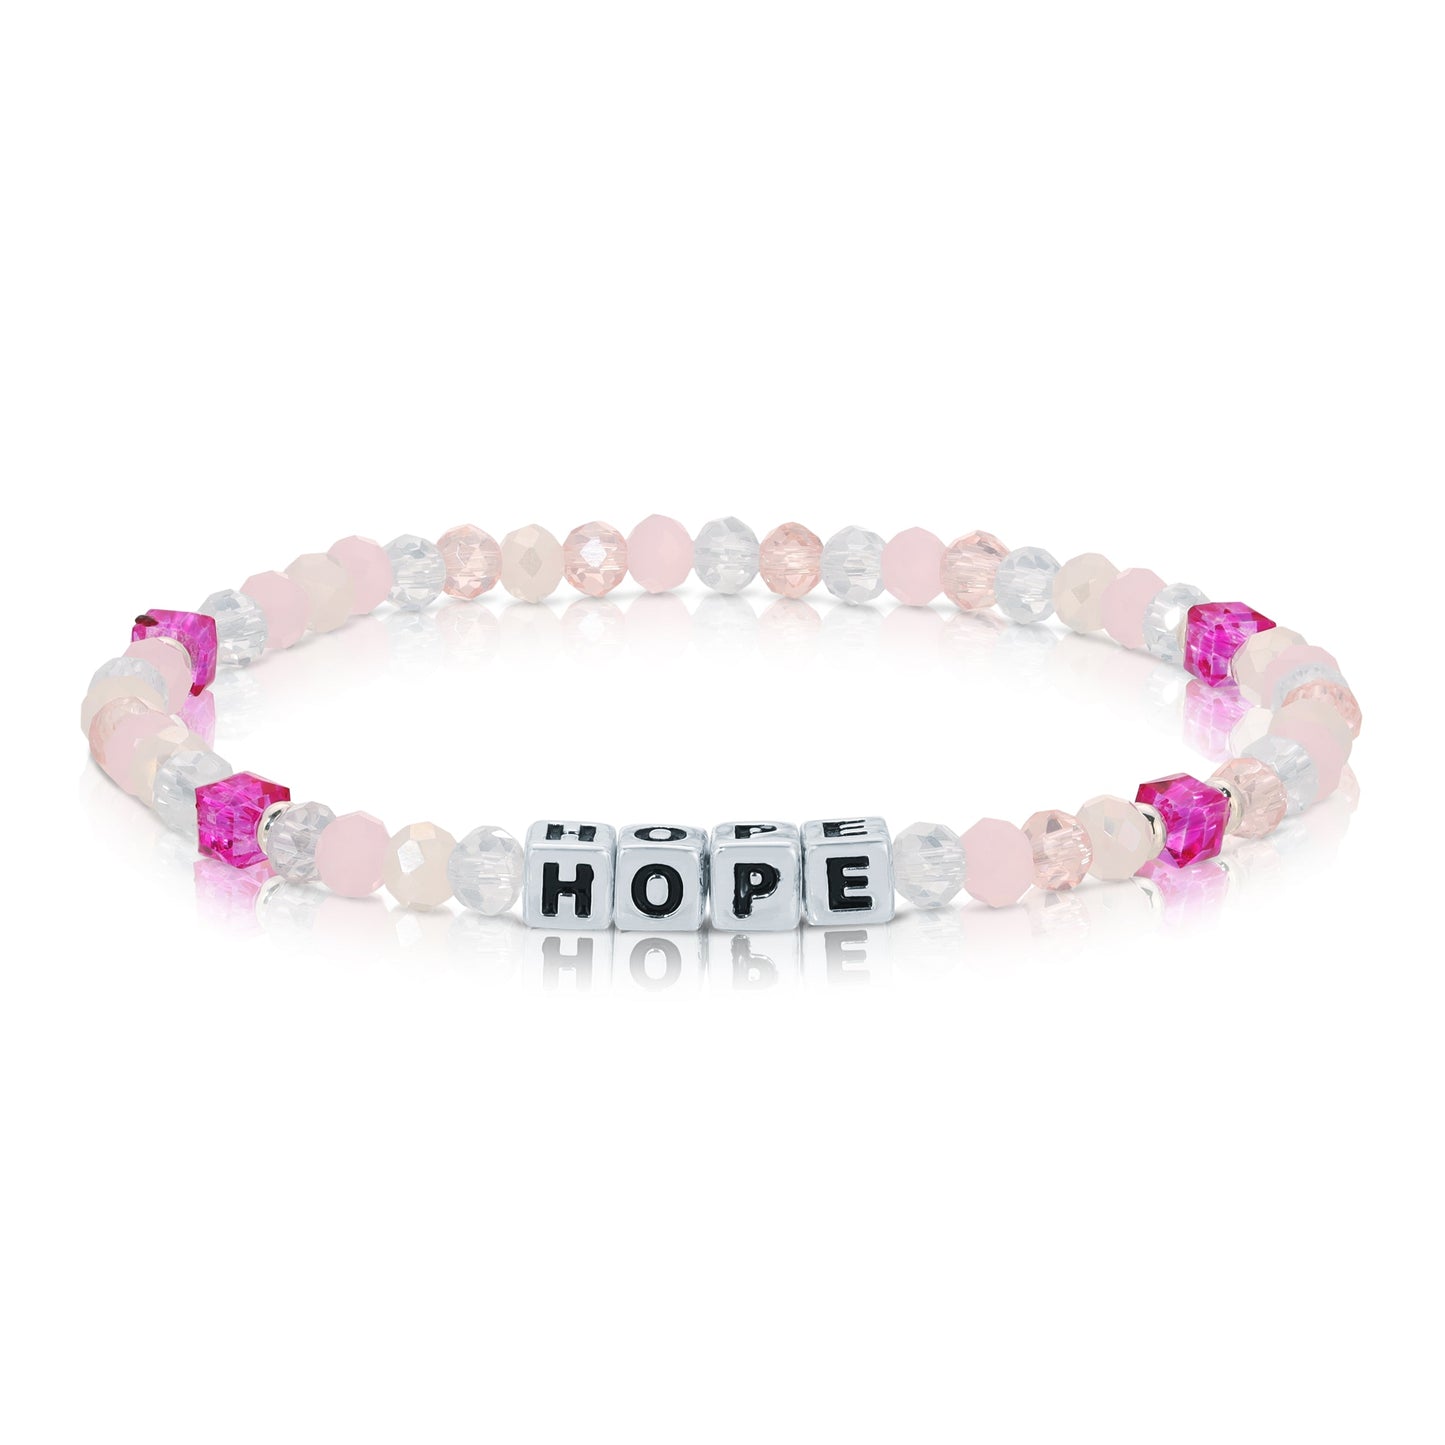 HOPE Colorful Words Bracelet